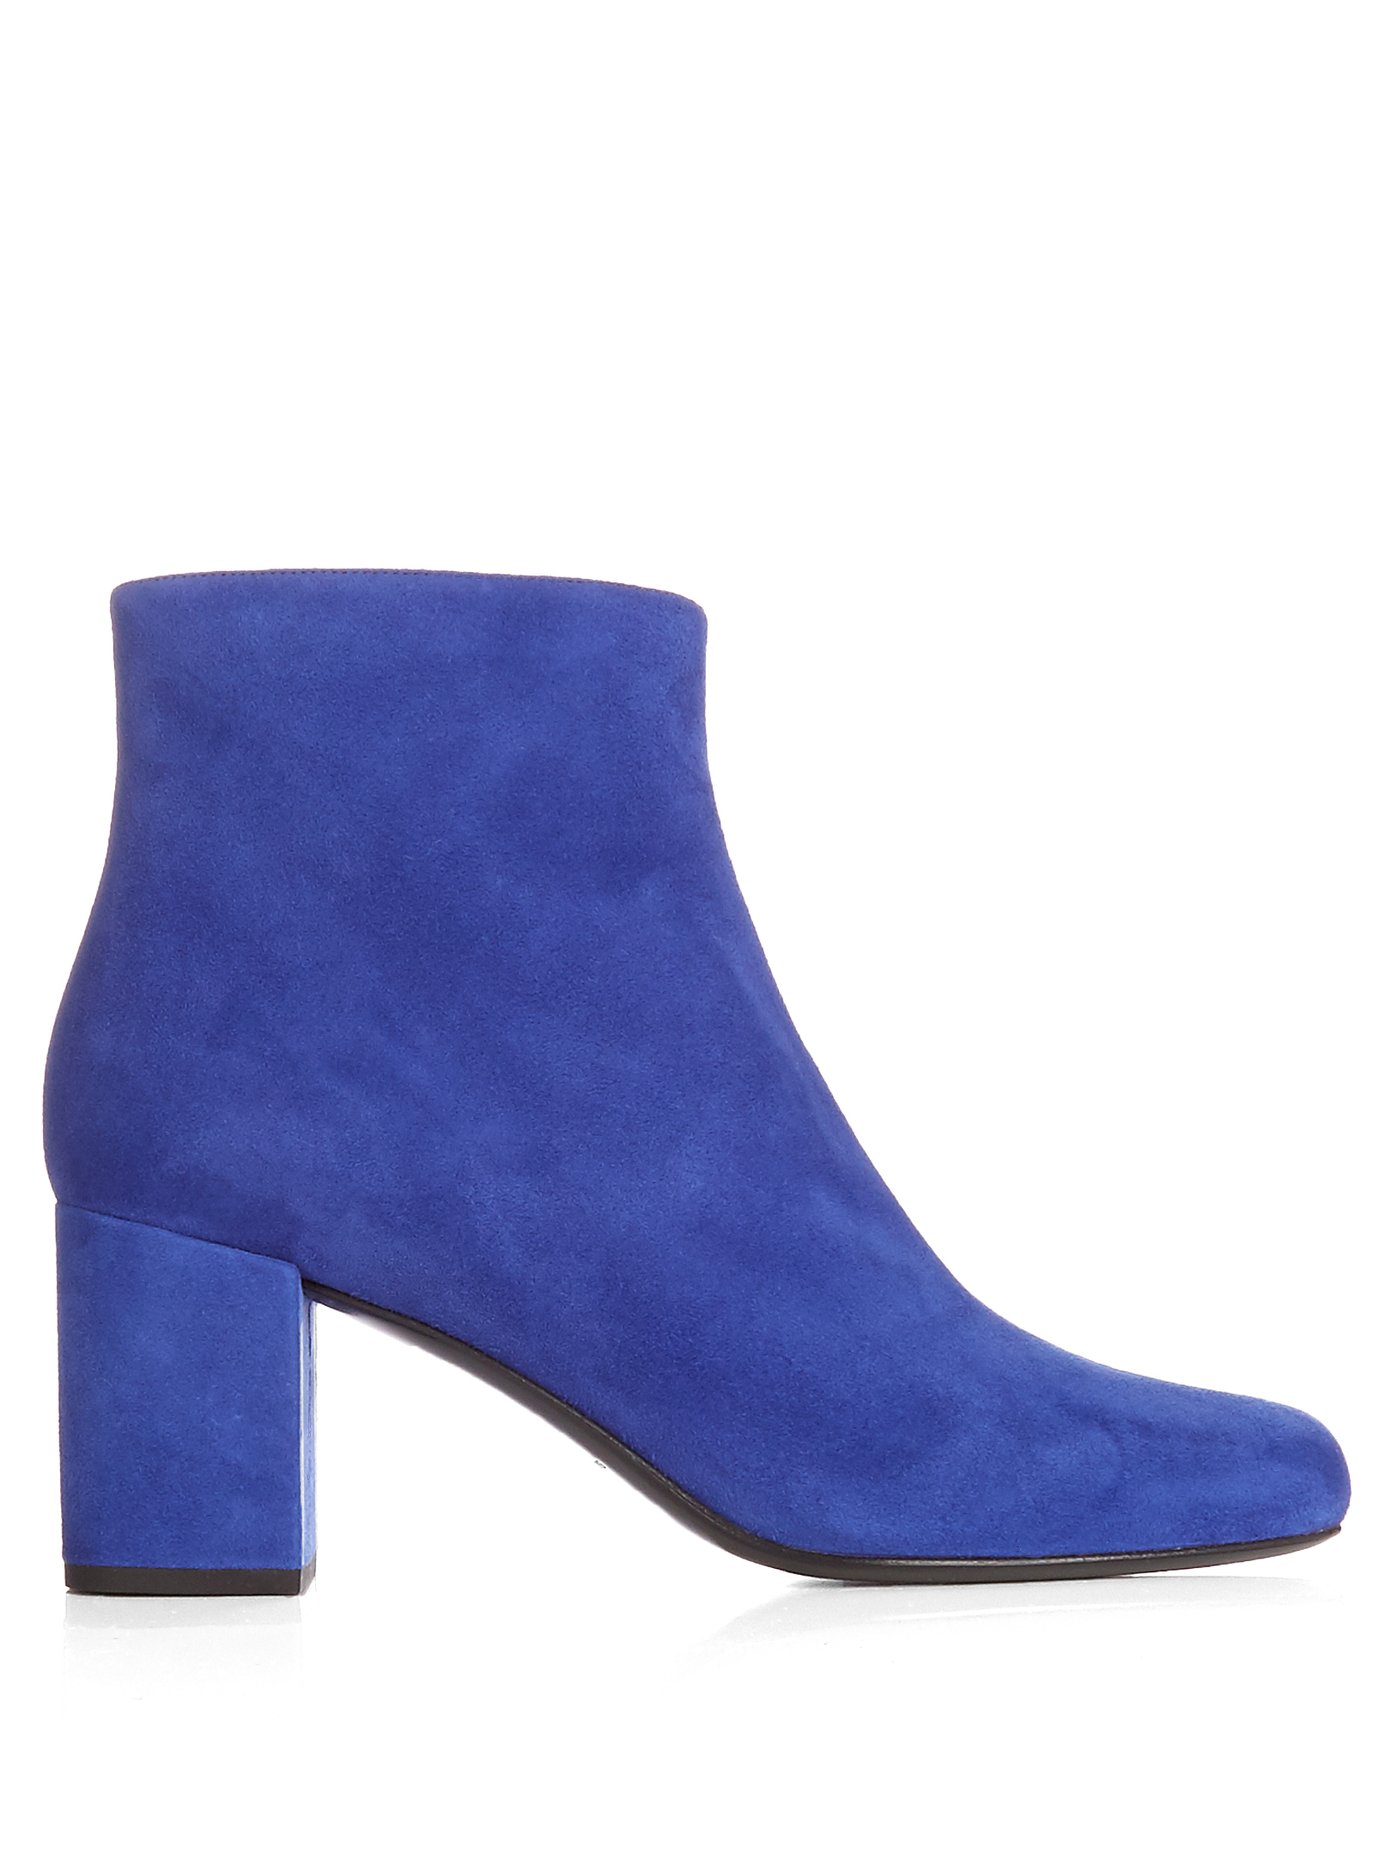 cobalt blue ankle boots uk